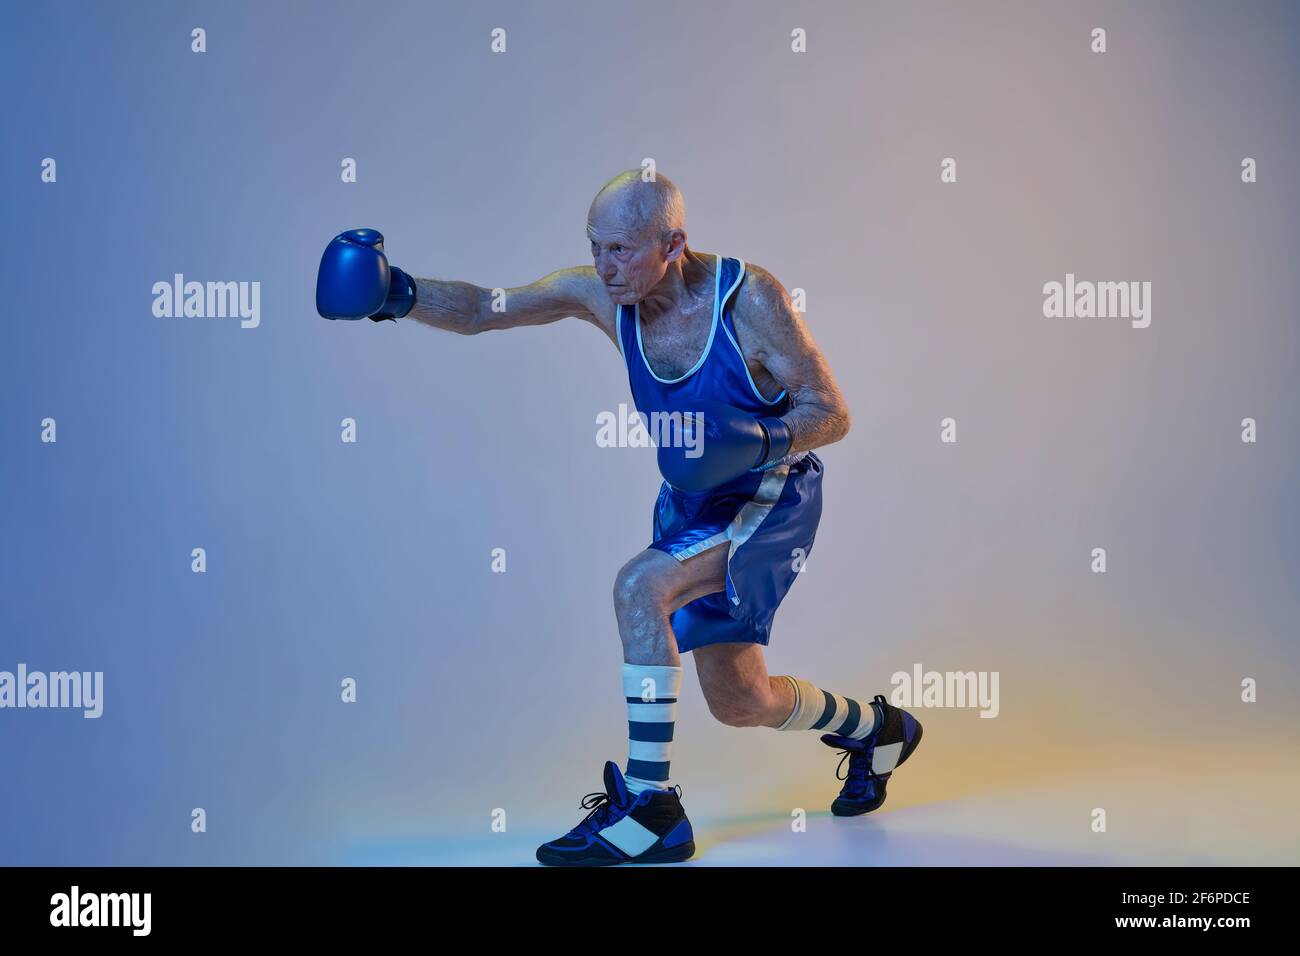 hombre con ropa deportiva entrenando boxeo en el gimnasio con bolsas de  empuje. iluminado por la luz 15244296 Foto de stock en Vecteezy